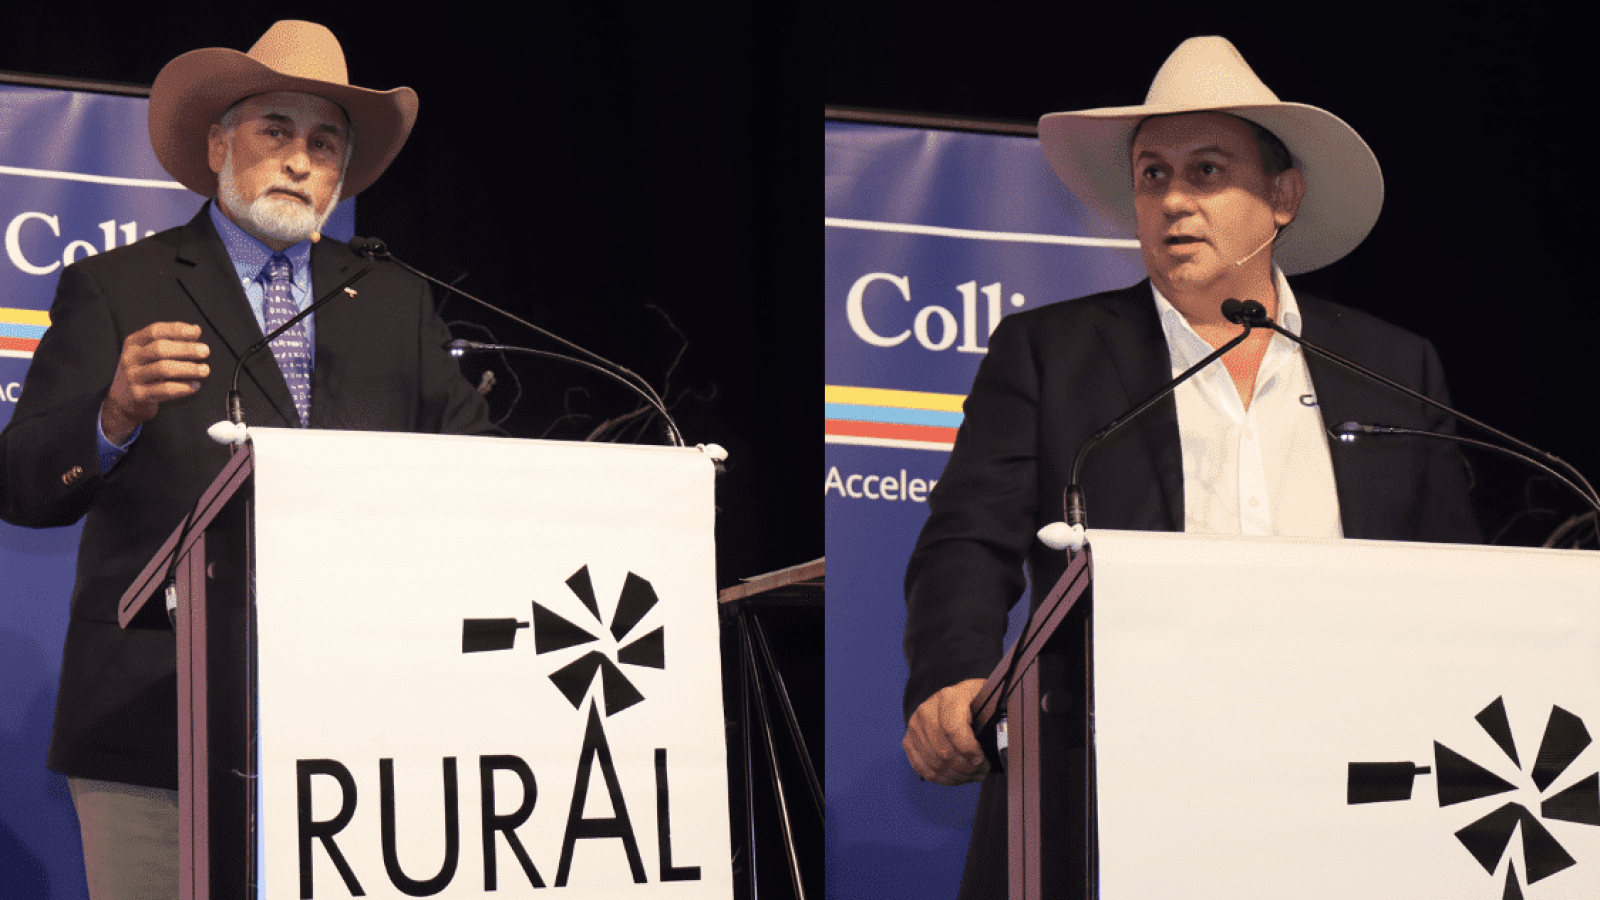 Men at podium wearing cowboy hats